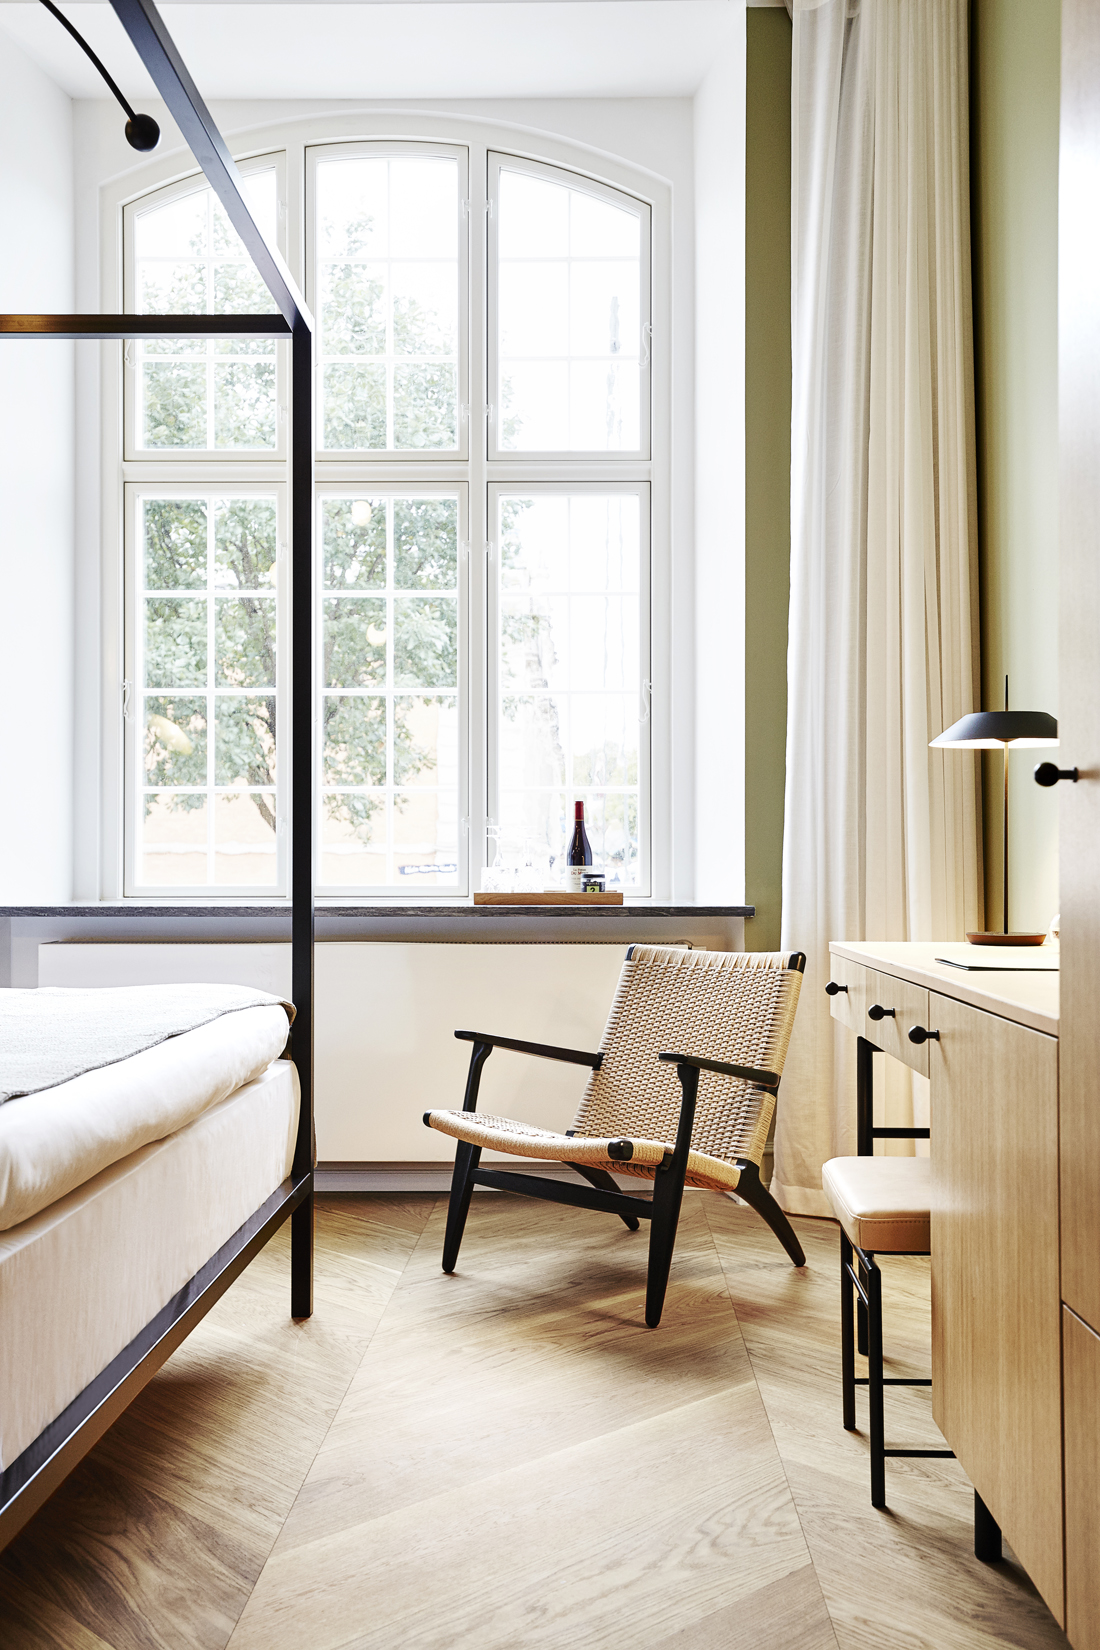 Nobis Hotel Copenhagen - Renovation & Redesign by Wingardhs